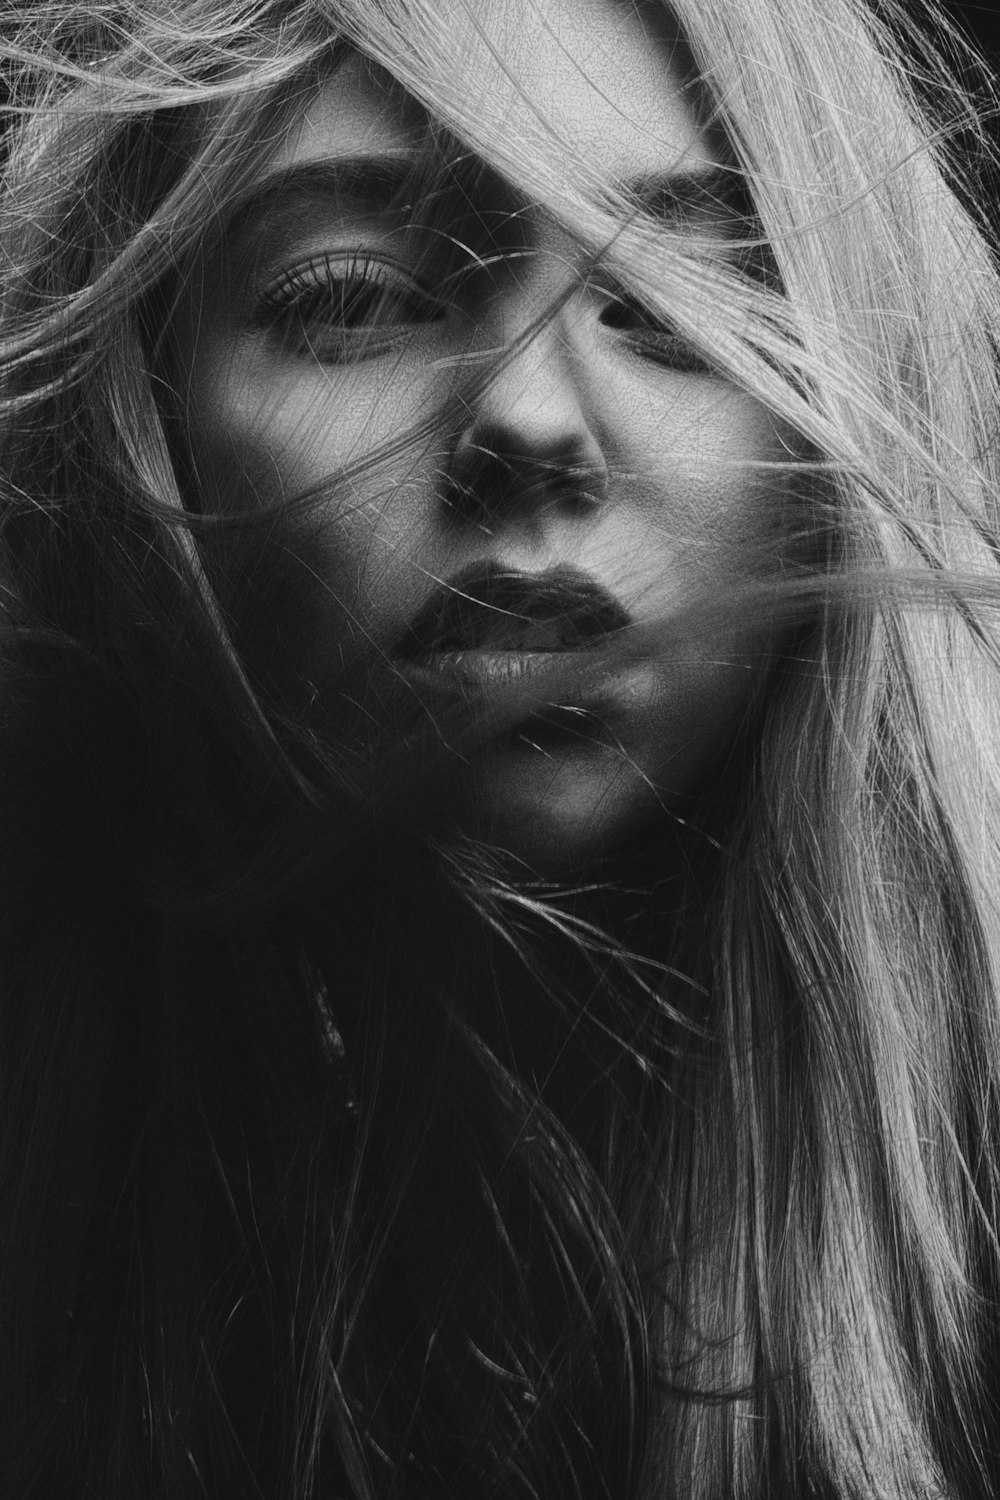 fotografia in scala di grigi del viso della donna